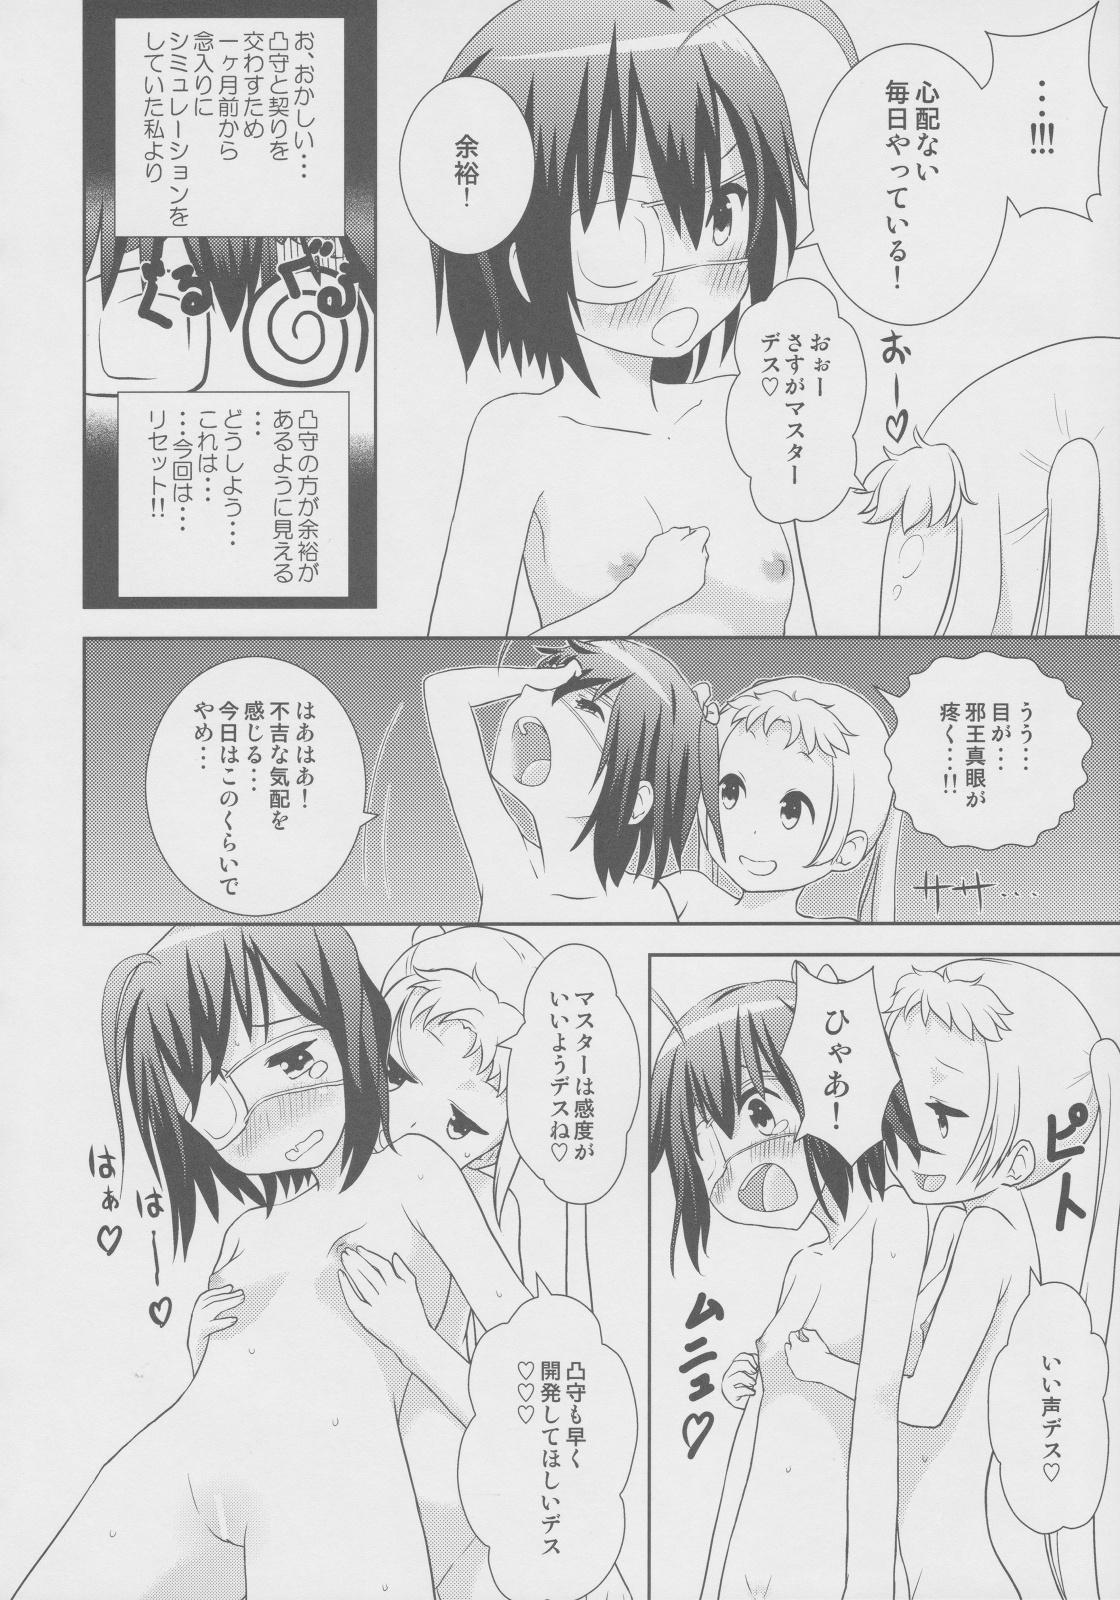 Hardcore Fucking DekomoRikka - Chuunibyou demo koi ga shitai Transgender - Page 7